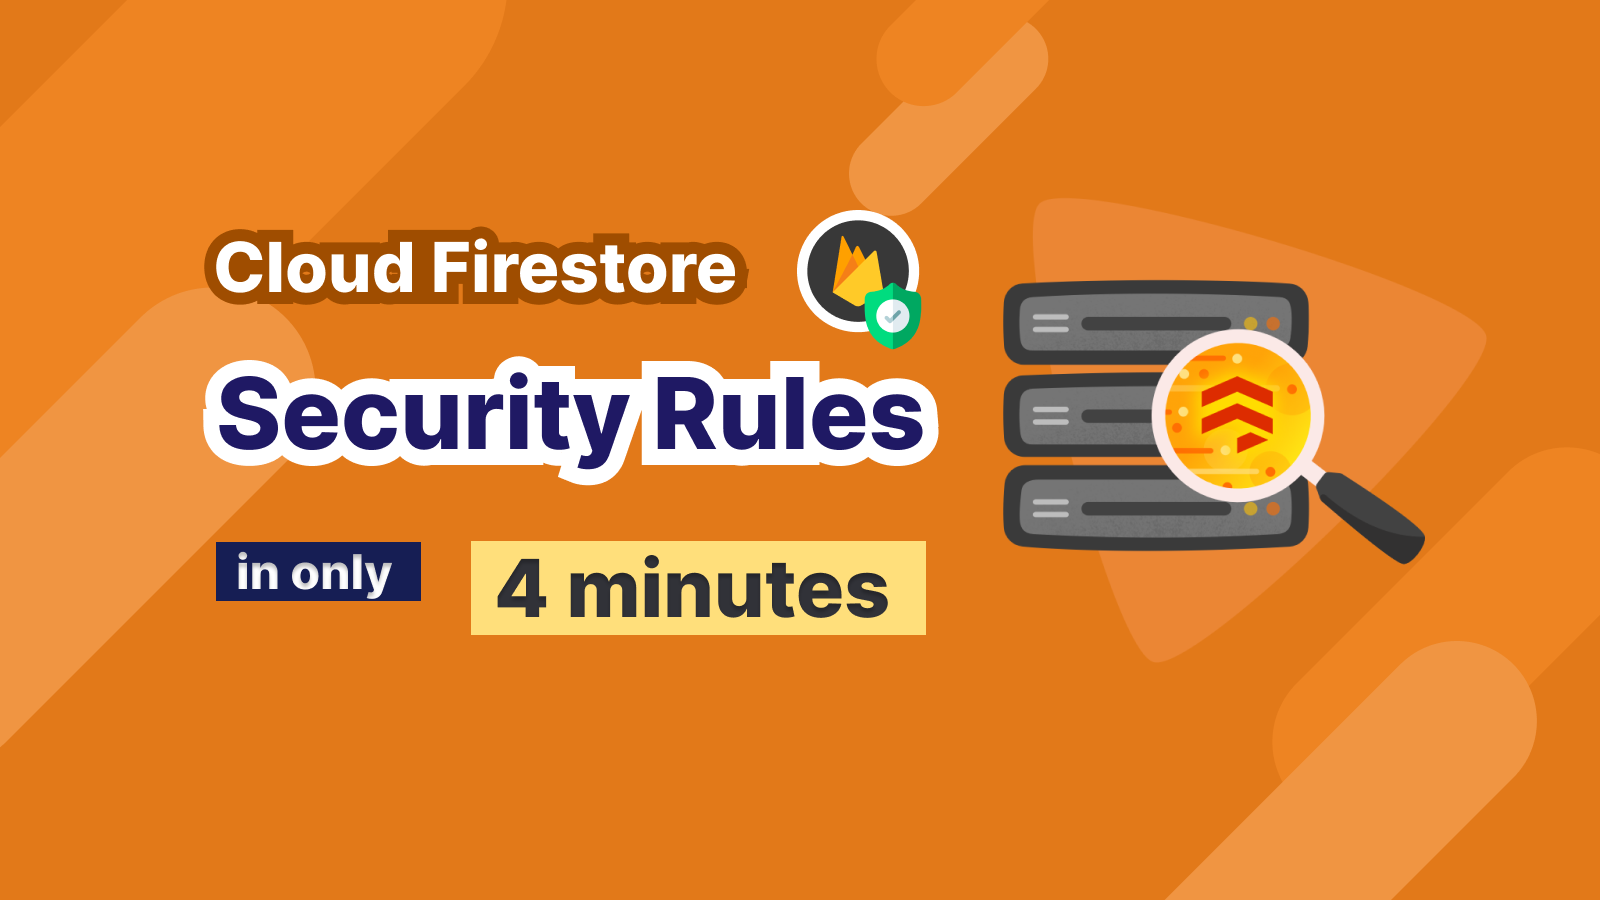 Cài đặt Security Rules cho Cloud Firestore trong 4 phút